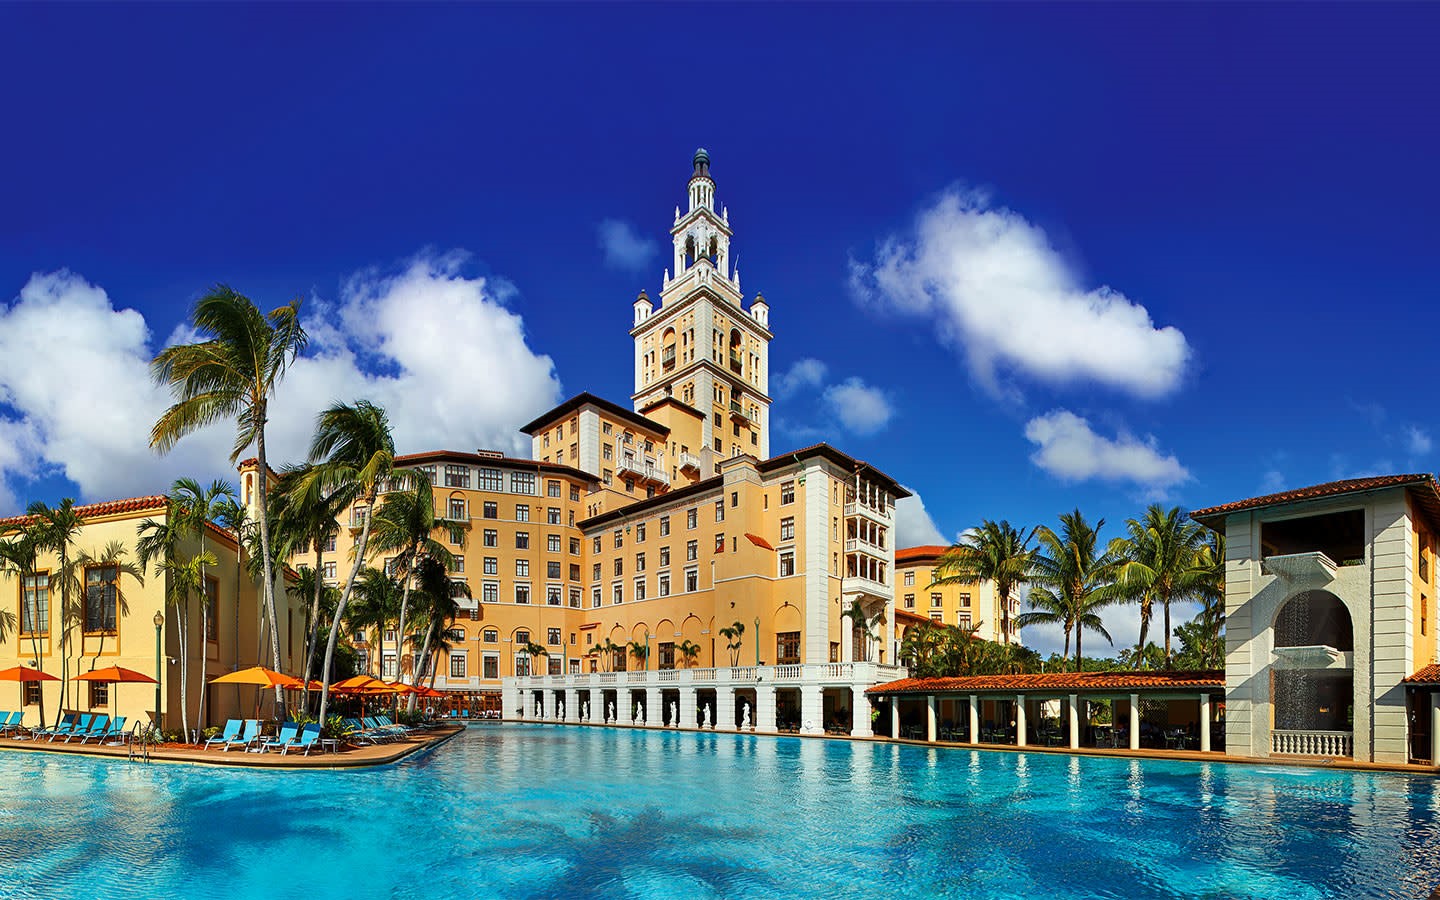 The Biltmore Hotel Miami in Coral Gables, FL